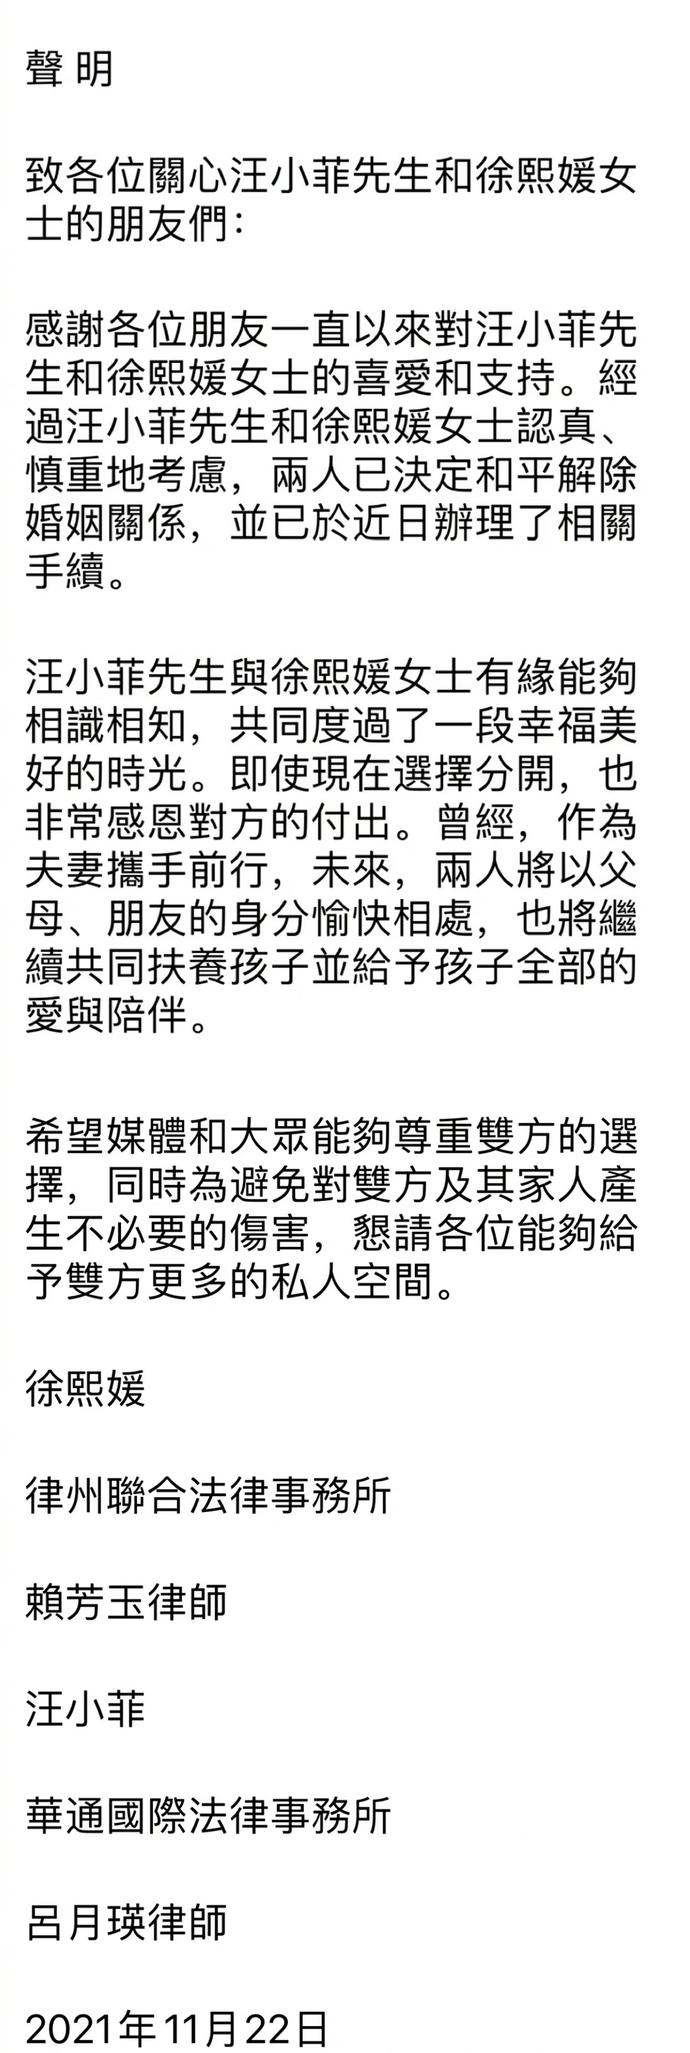 22日,汪小菲、大s发布离婚声明_百事杂谈_汉中论坛_汉中在线